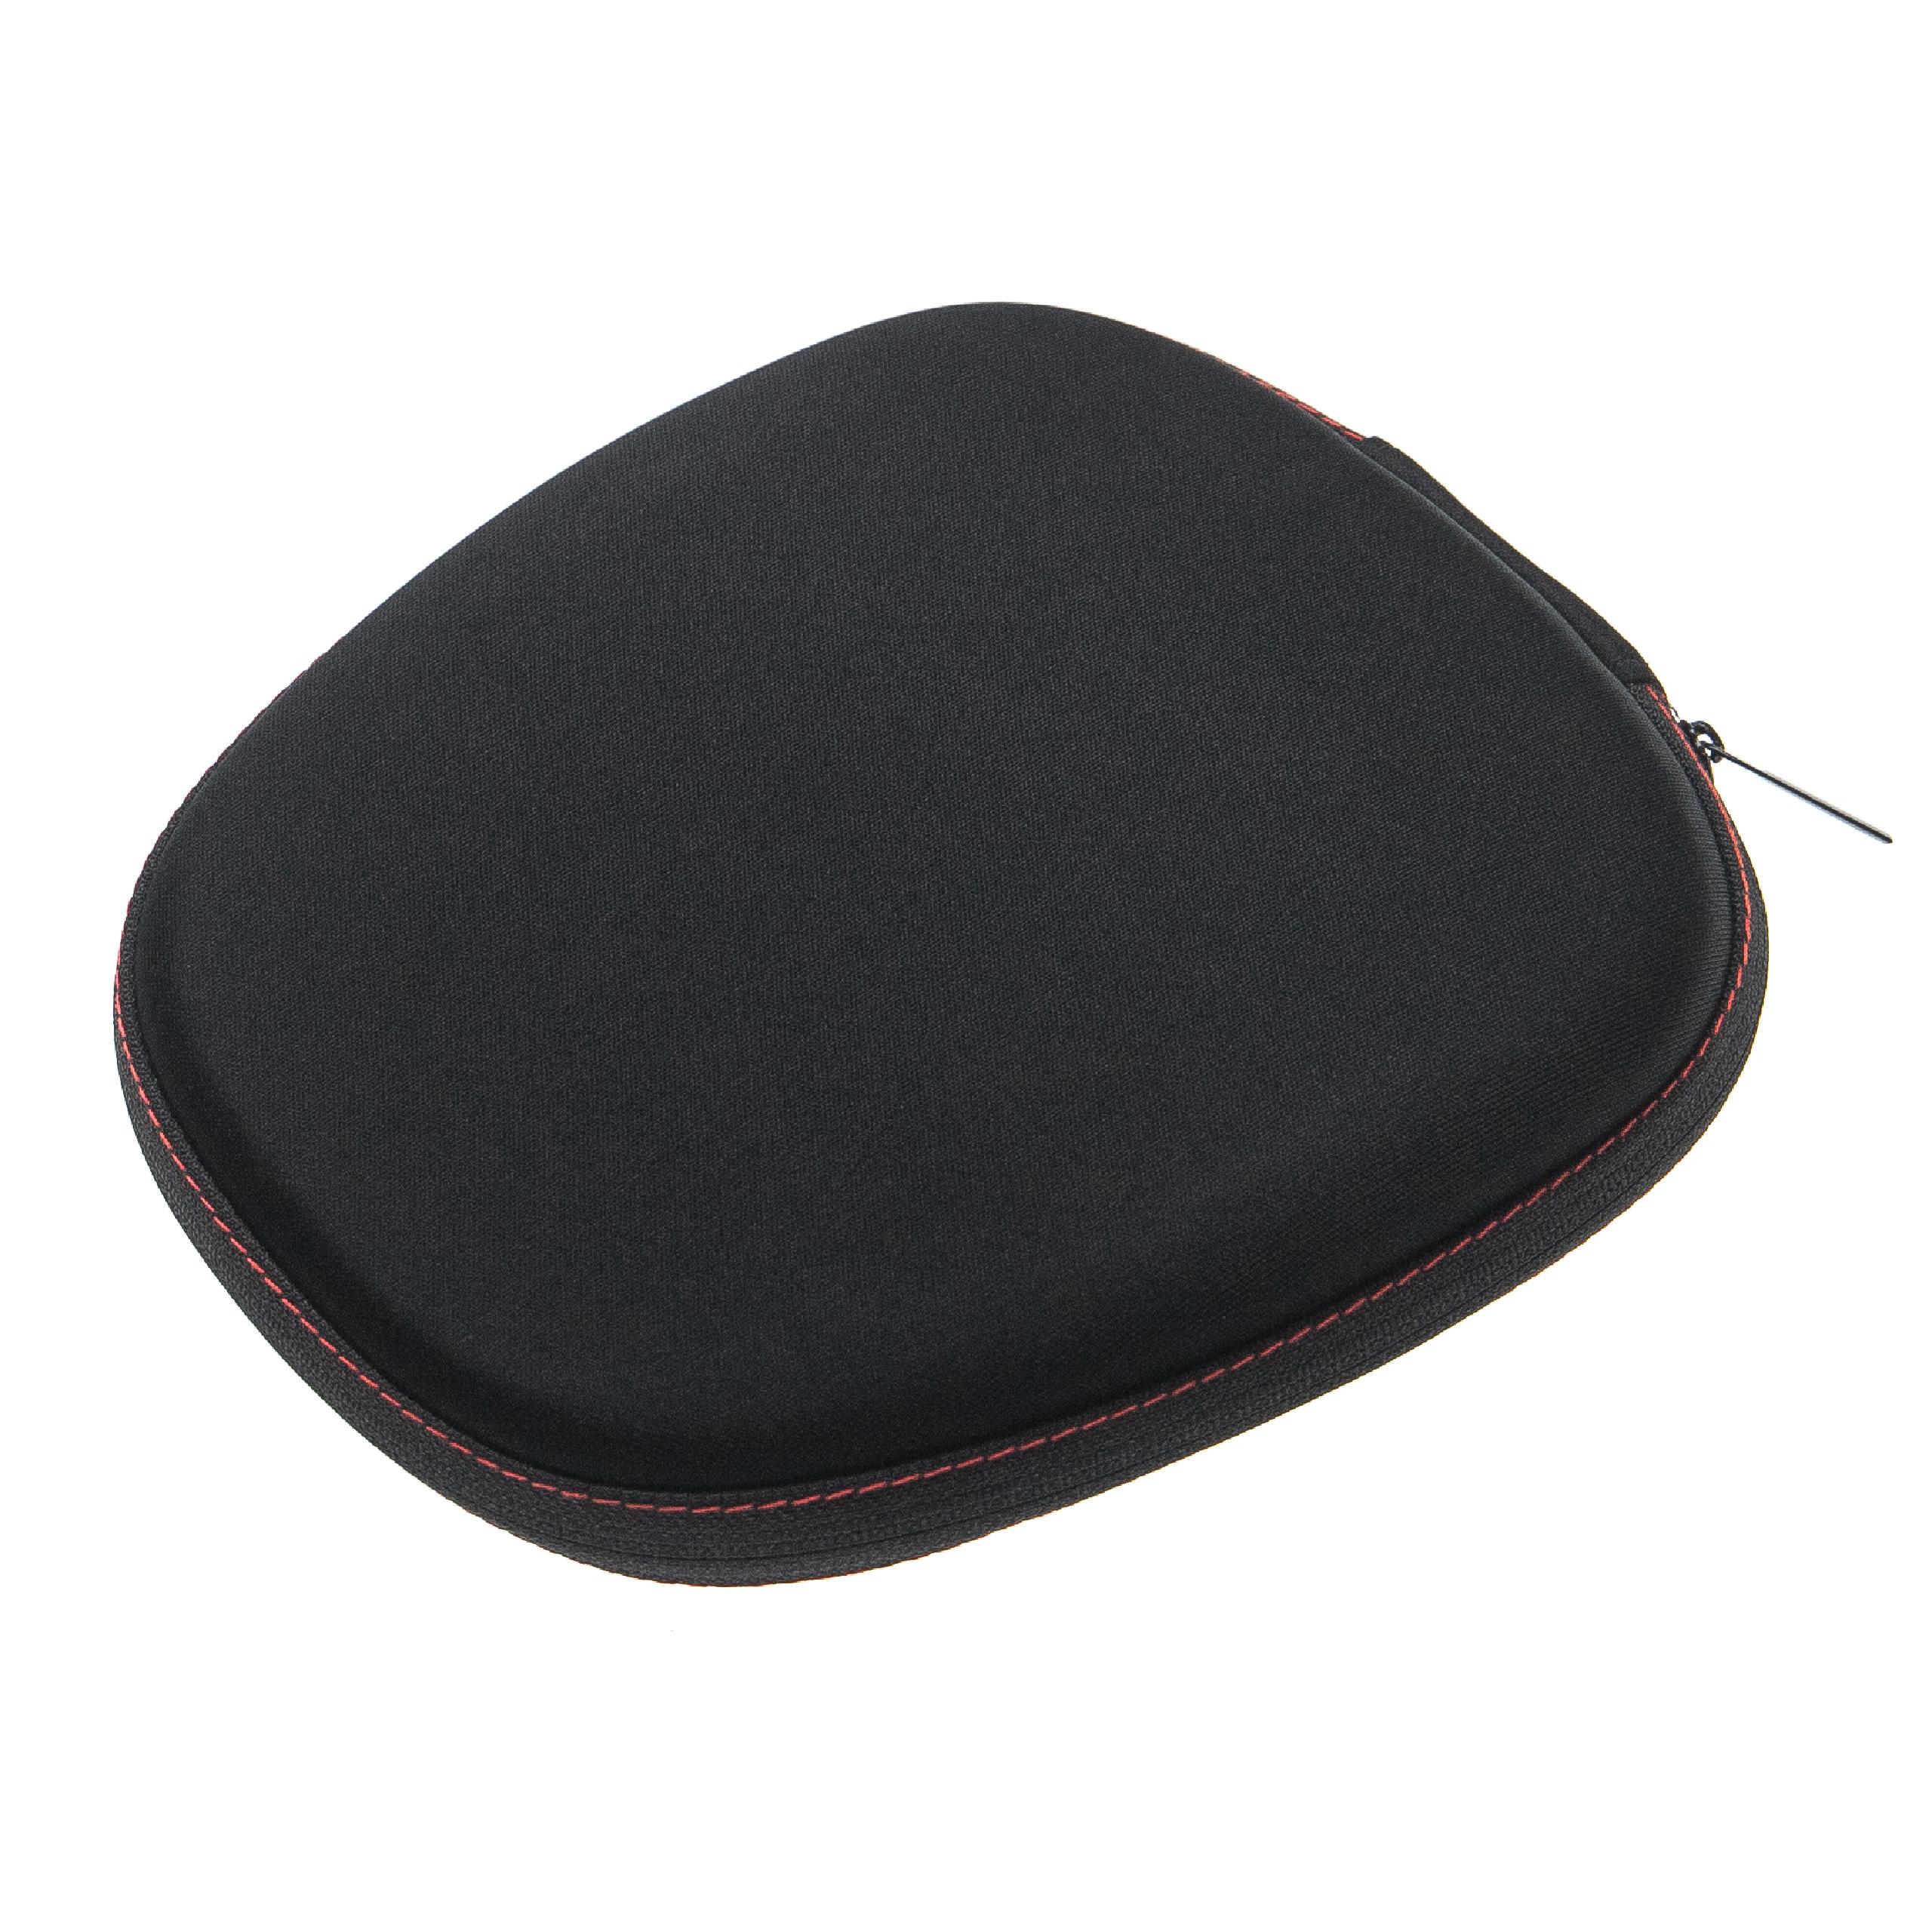 Transport Case suitable for Sony C400 Headphones, Headset - Bag, ethylene vinyl acetate (EVA), black